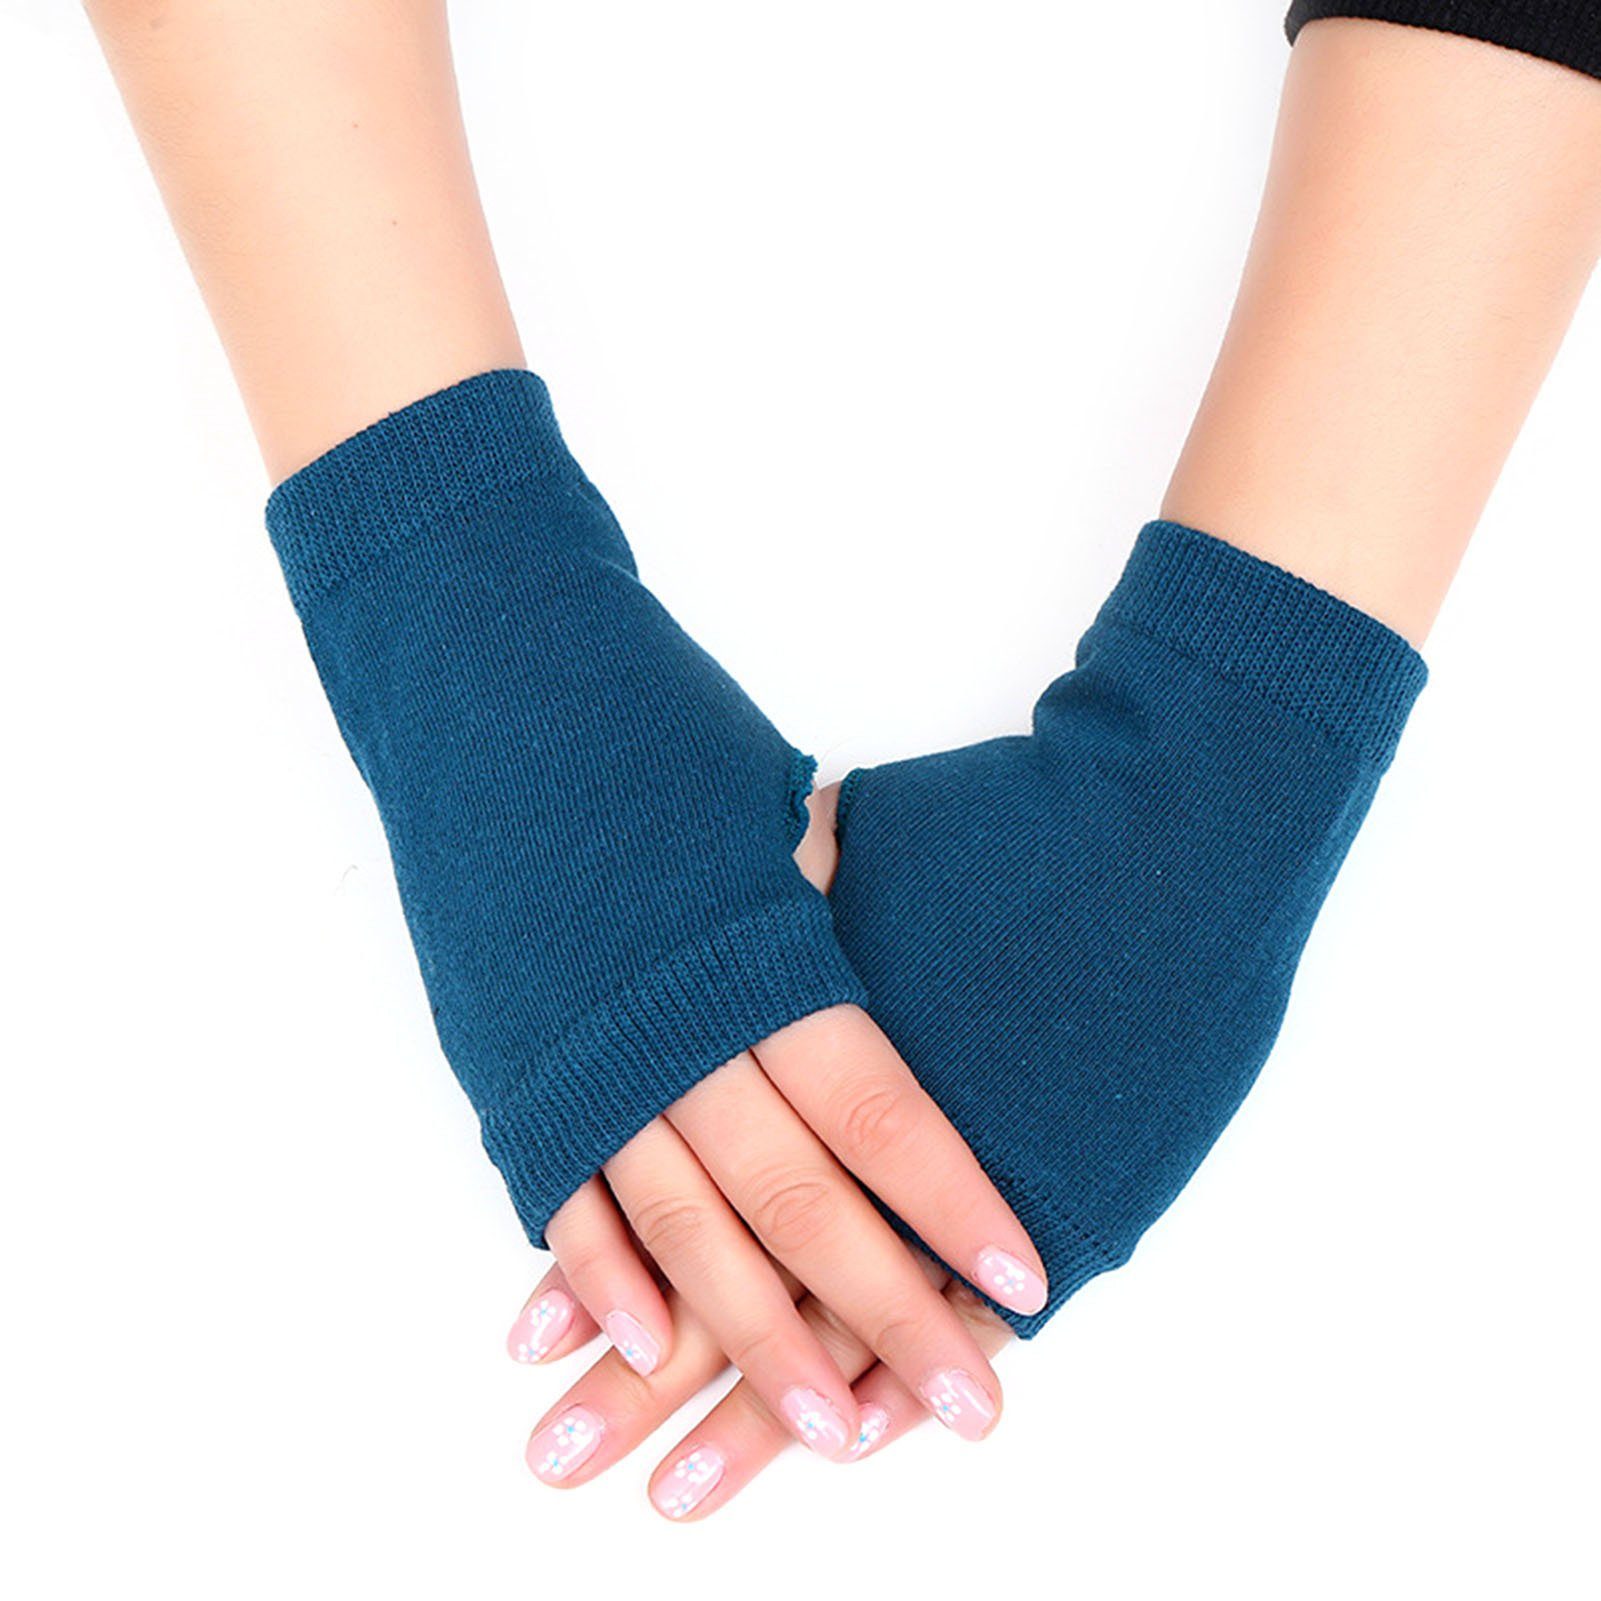 Halbfinger-Handschuhe, Handschuhe Strickhandschuhe Blusmart Fingerlose Strickhandschuhe grau